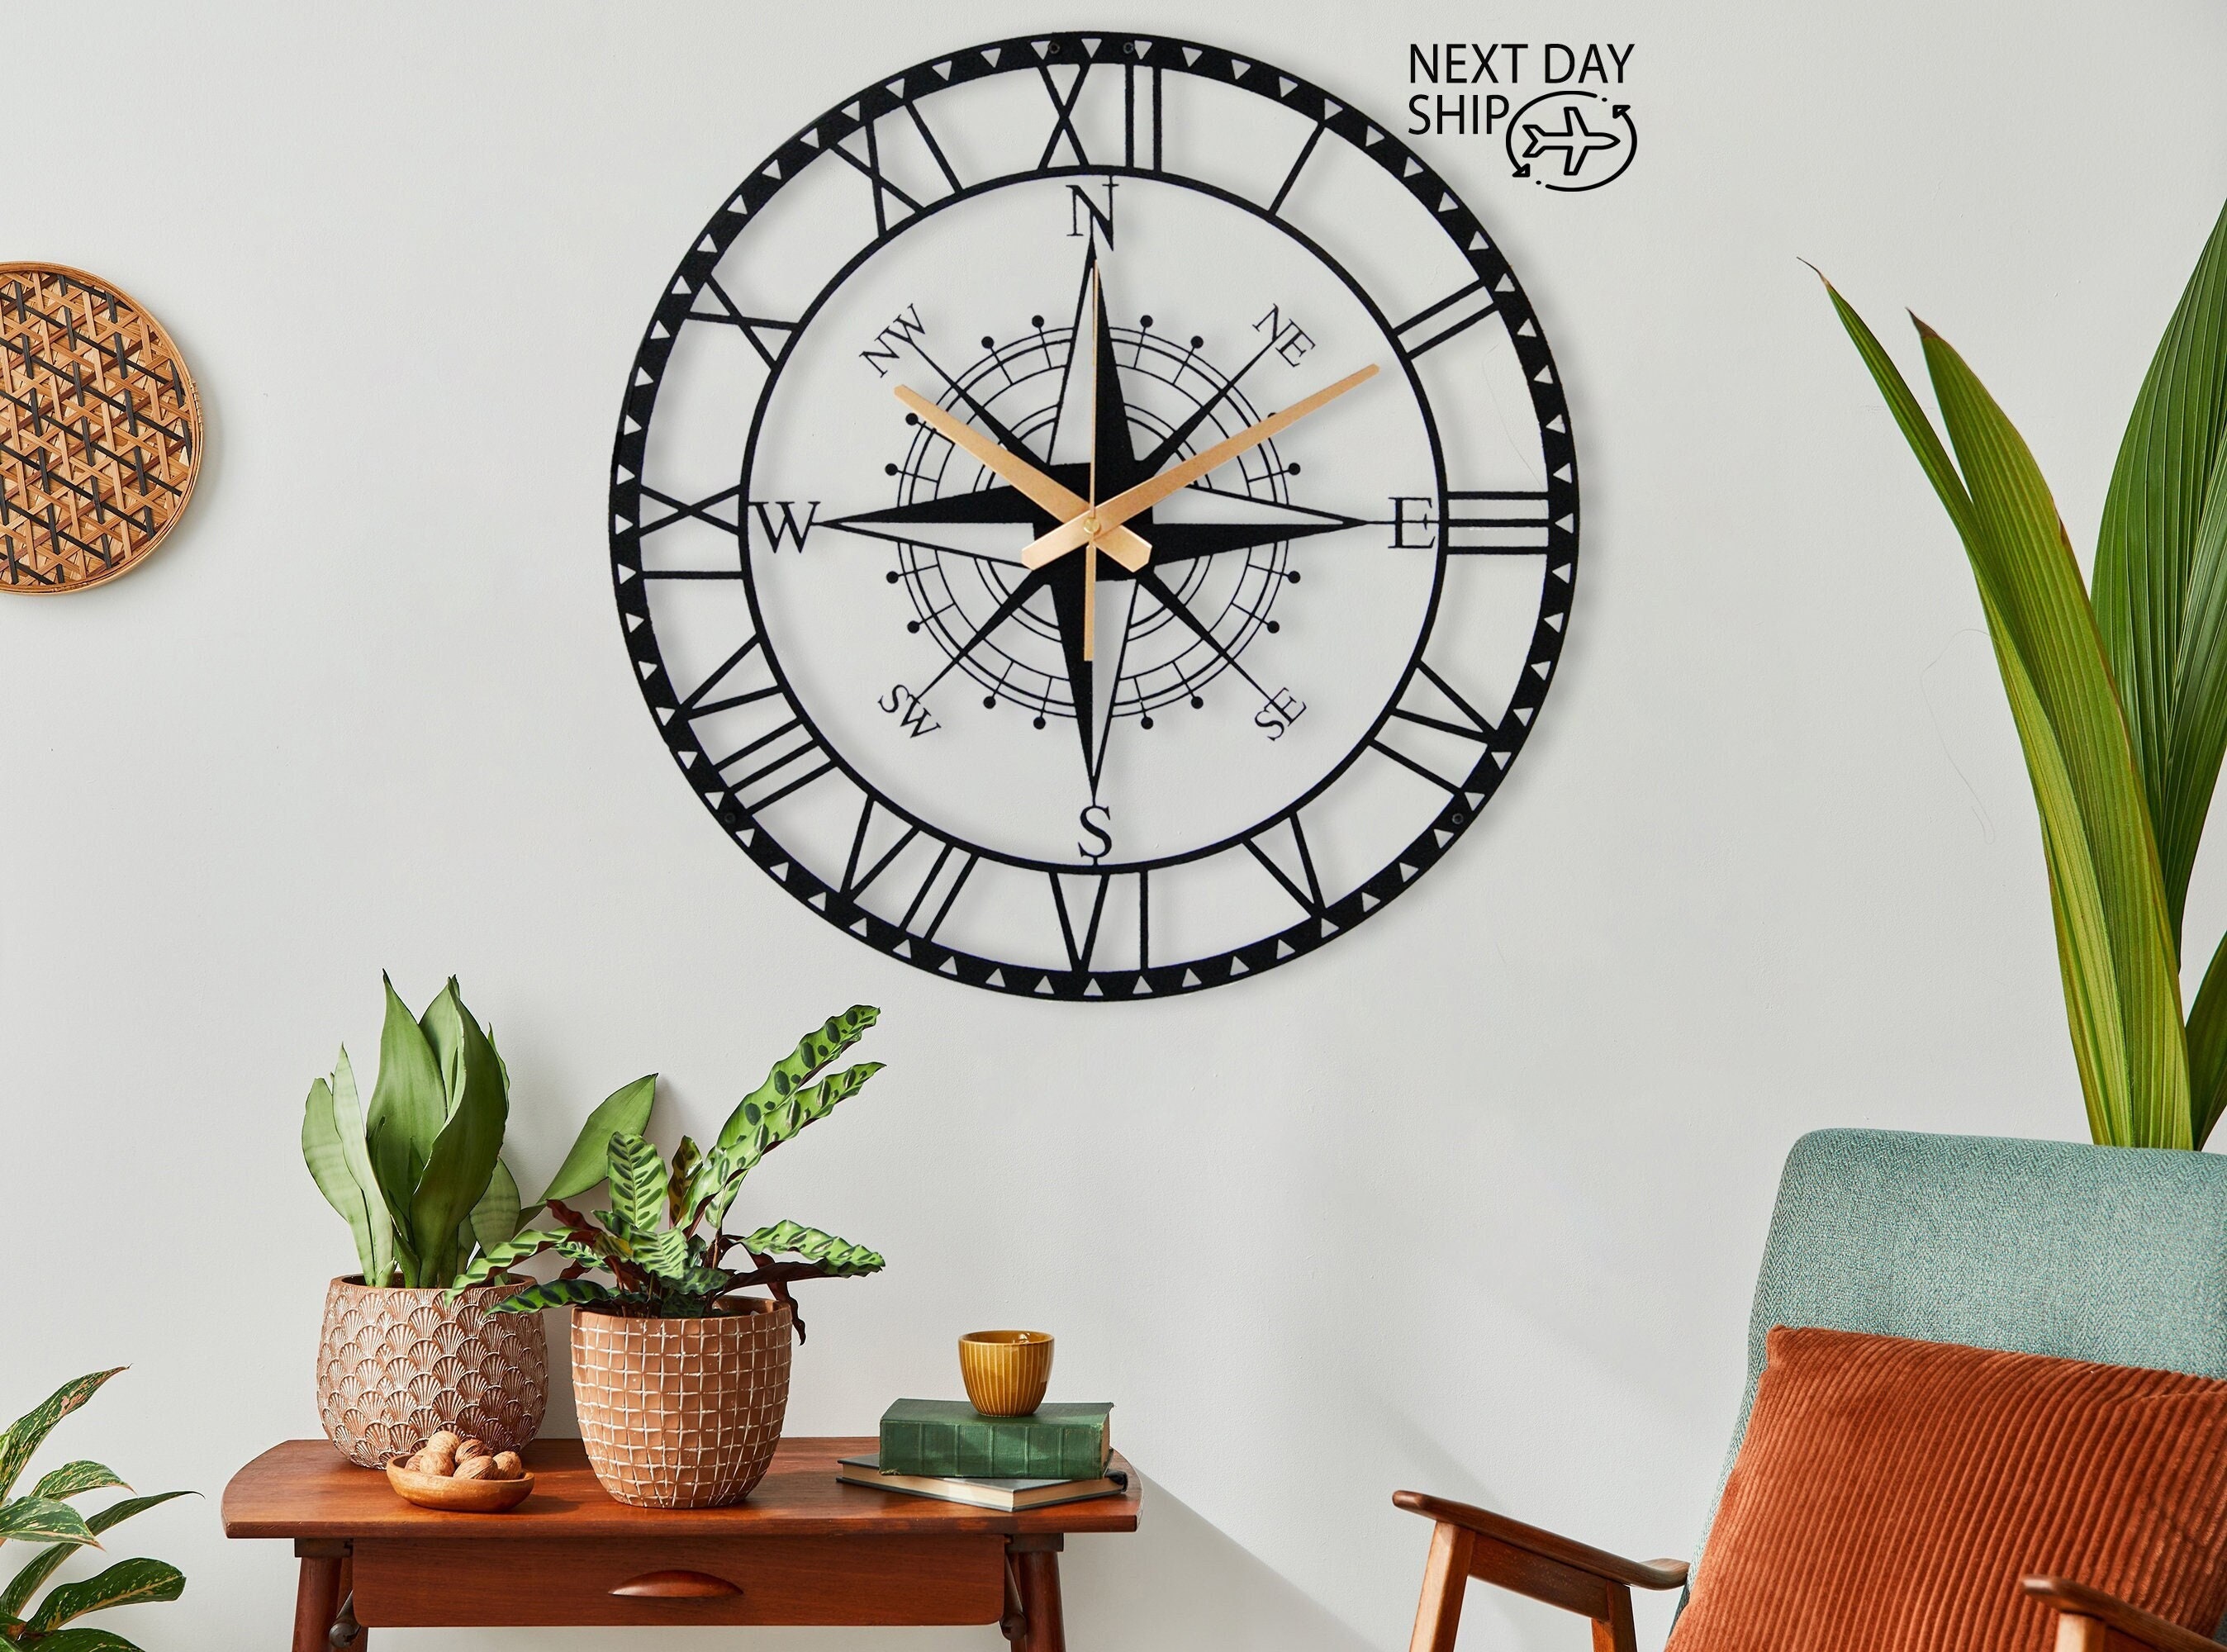 Wall Clock, Compass Design Silent Metal Wall New Home Gift, Oversize Clock Bestseller Decor Art